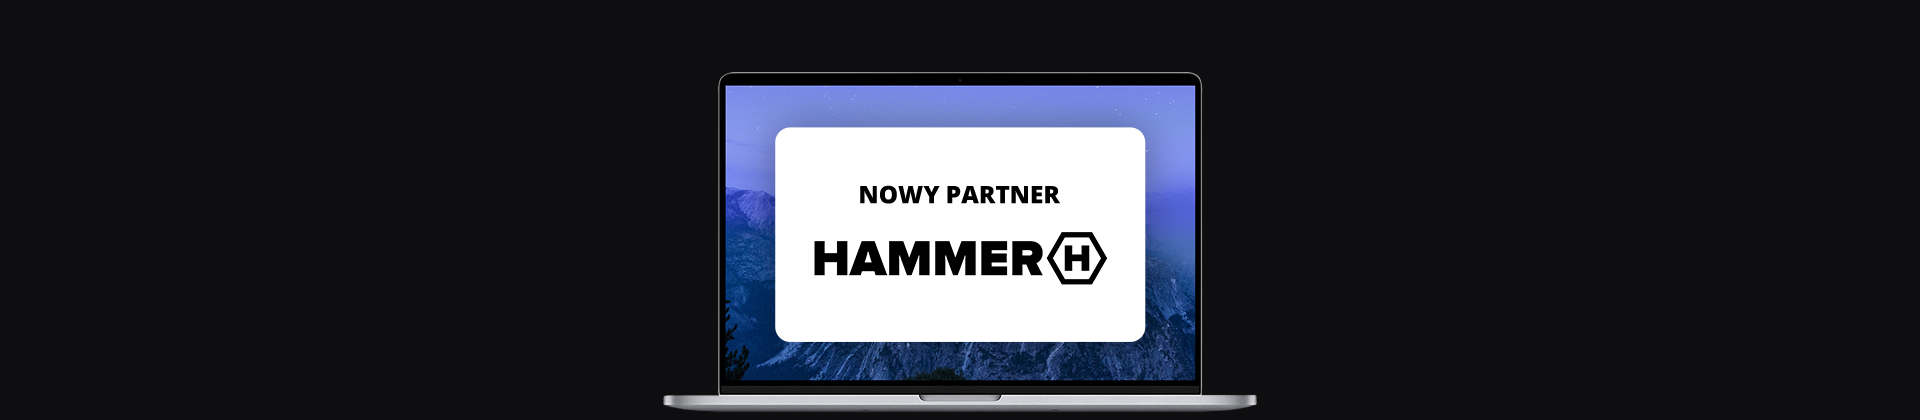 banner z ekranem laptopa, na nim logo marki HAMMER i napis "nowy partner"